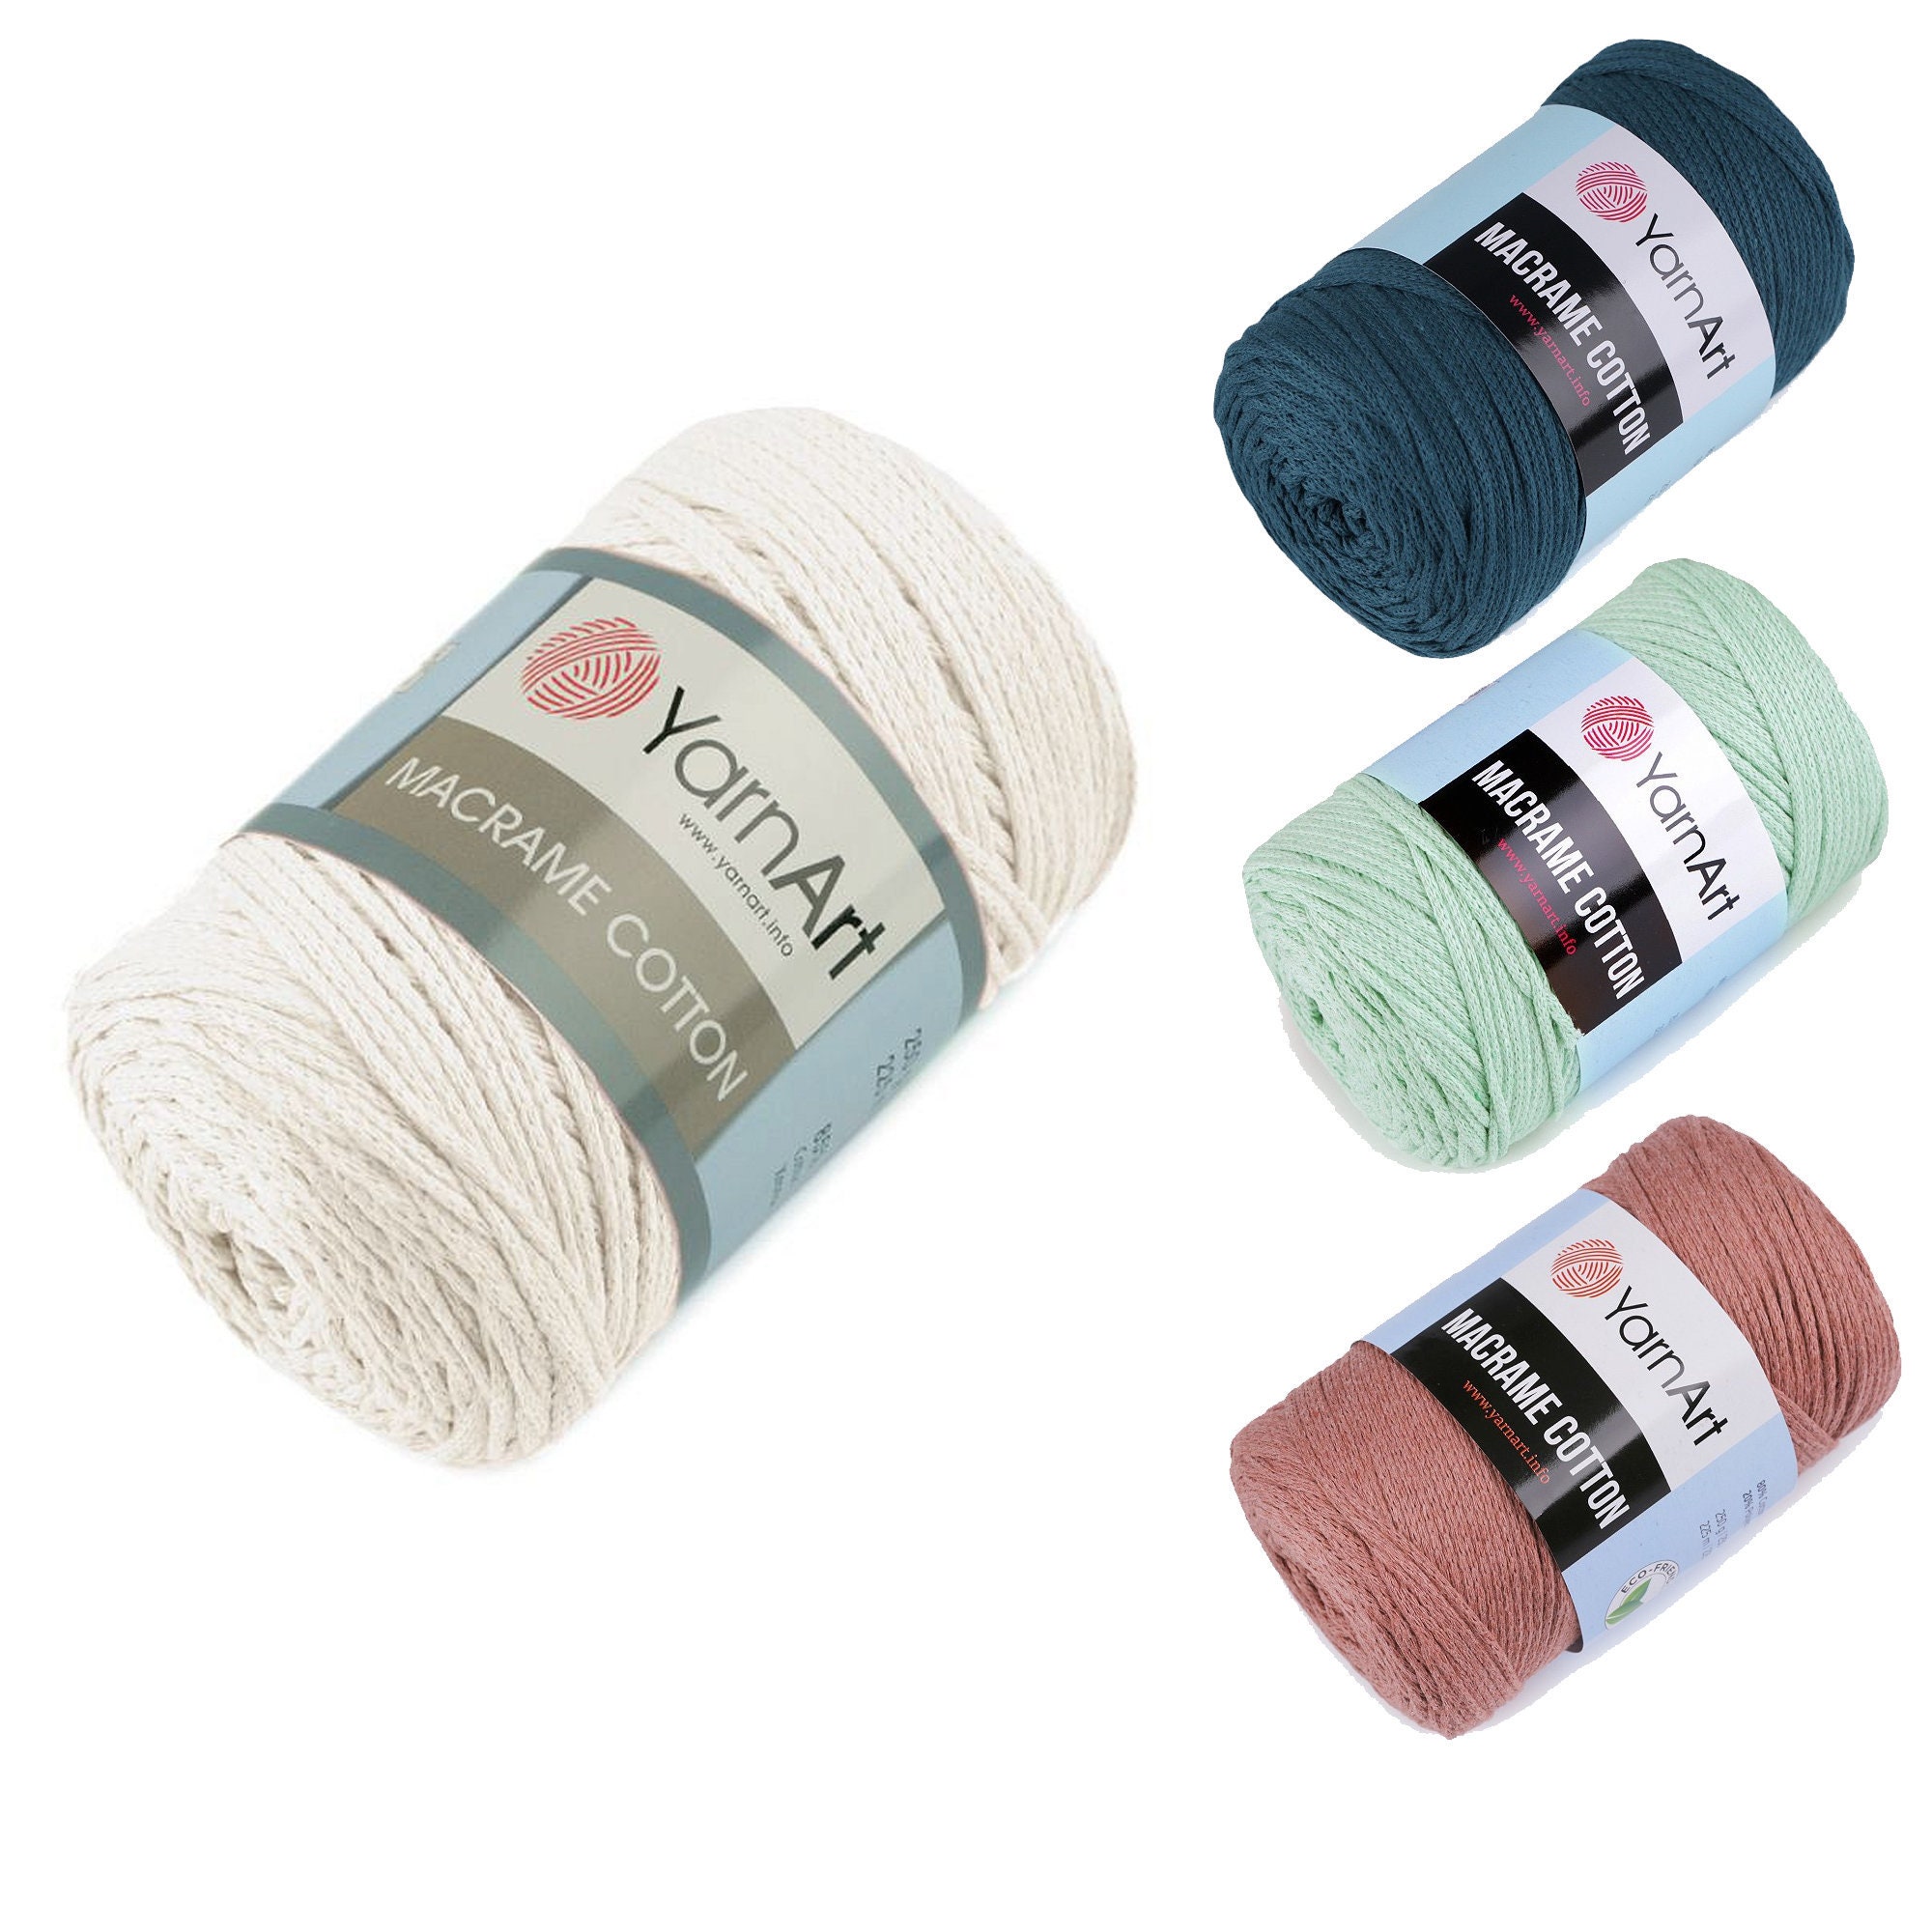 HILO MACRAME 50gr - Crochetteando - La tienda de los tejedores